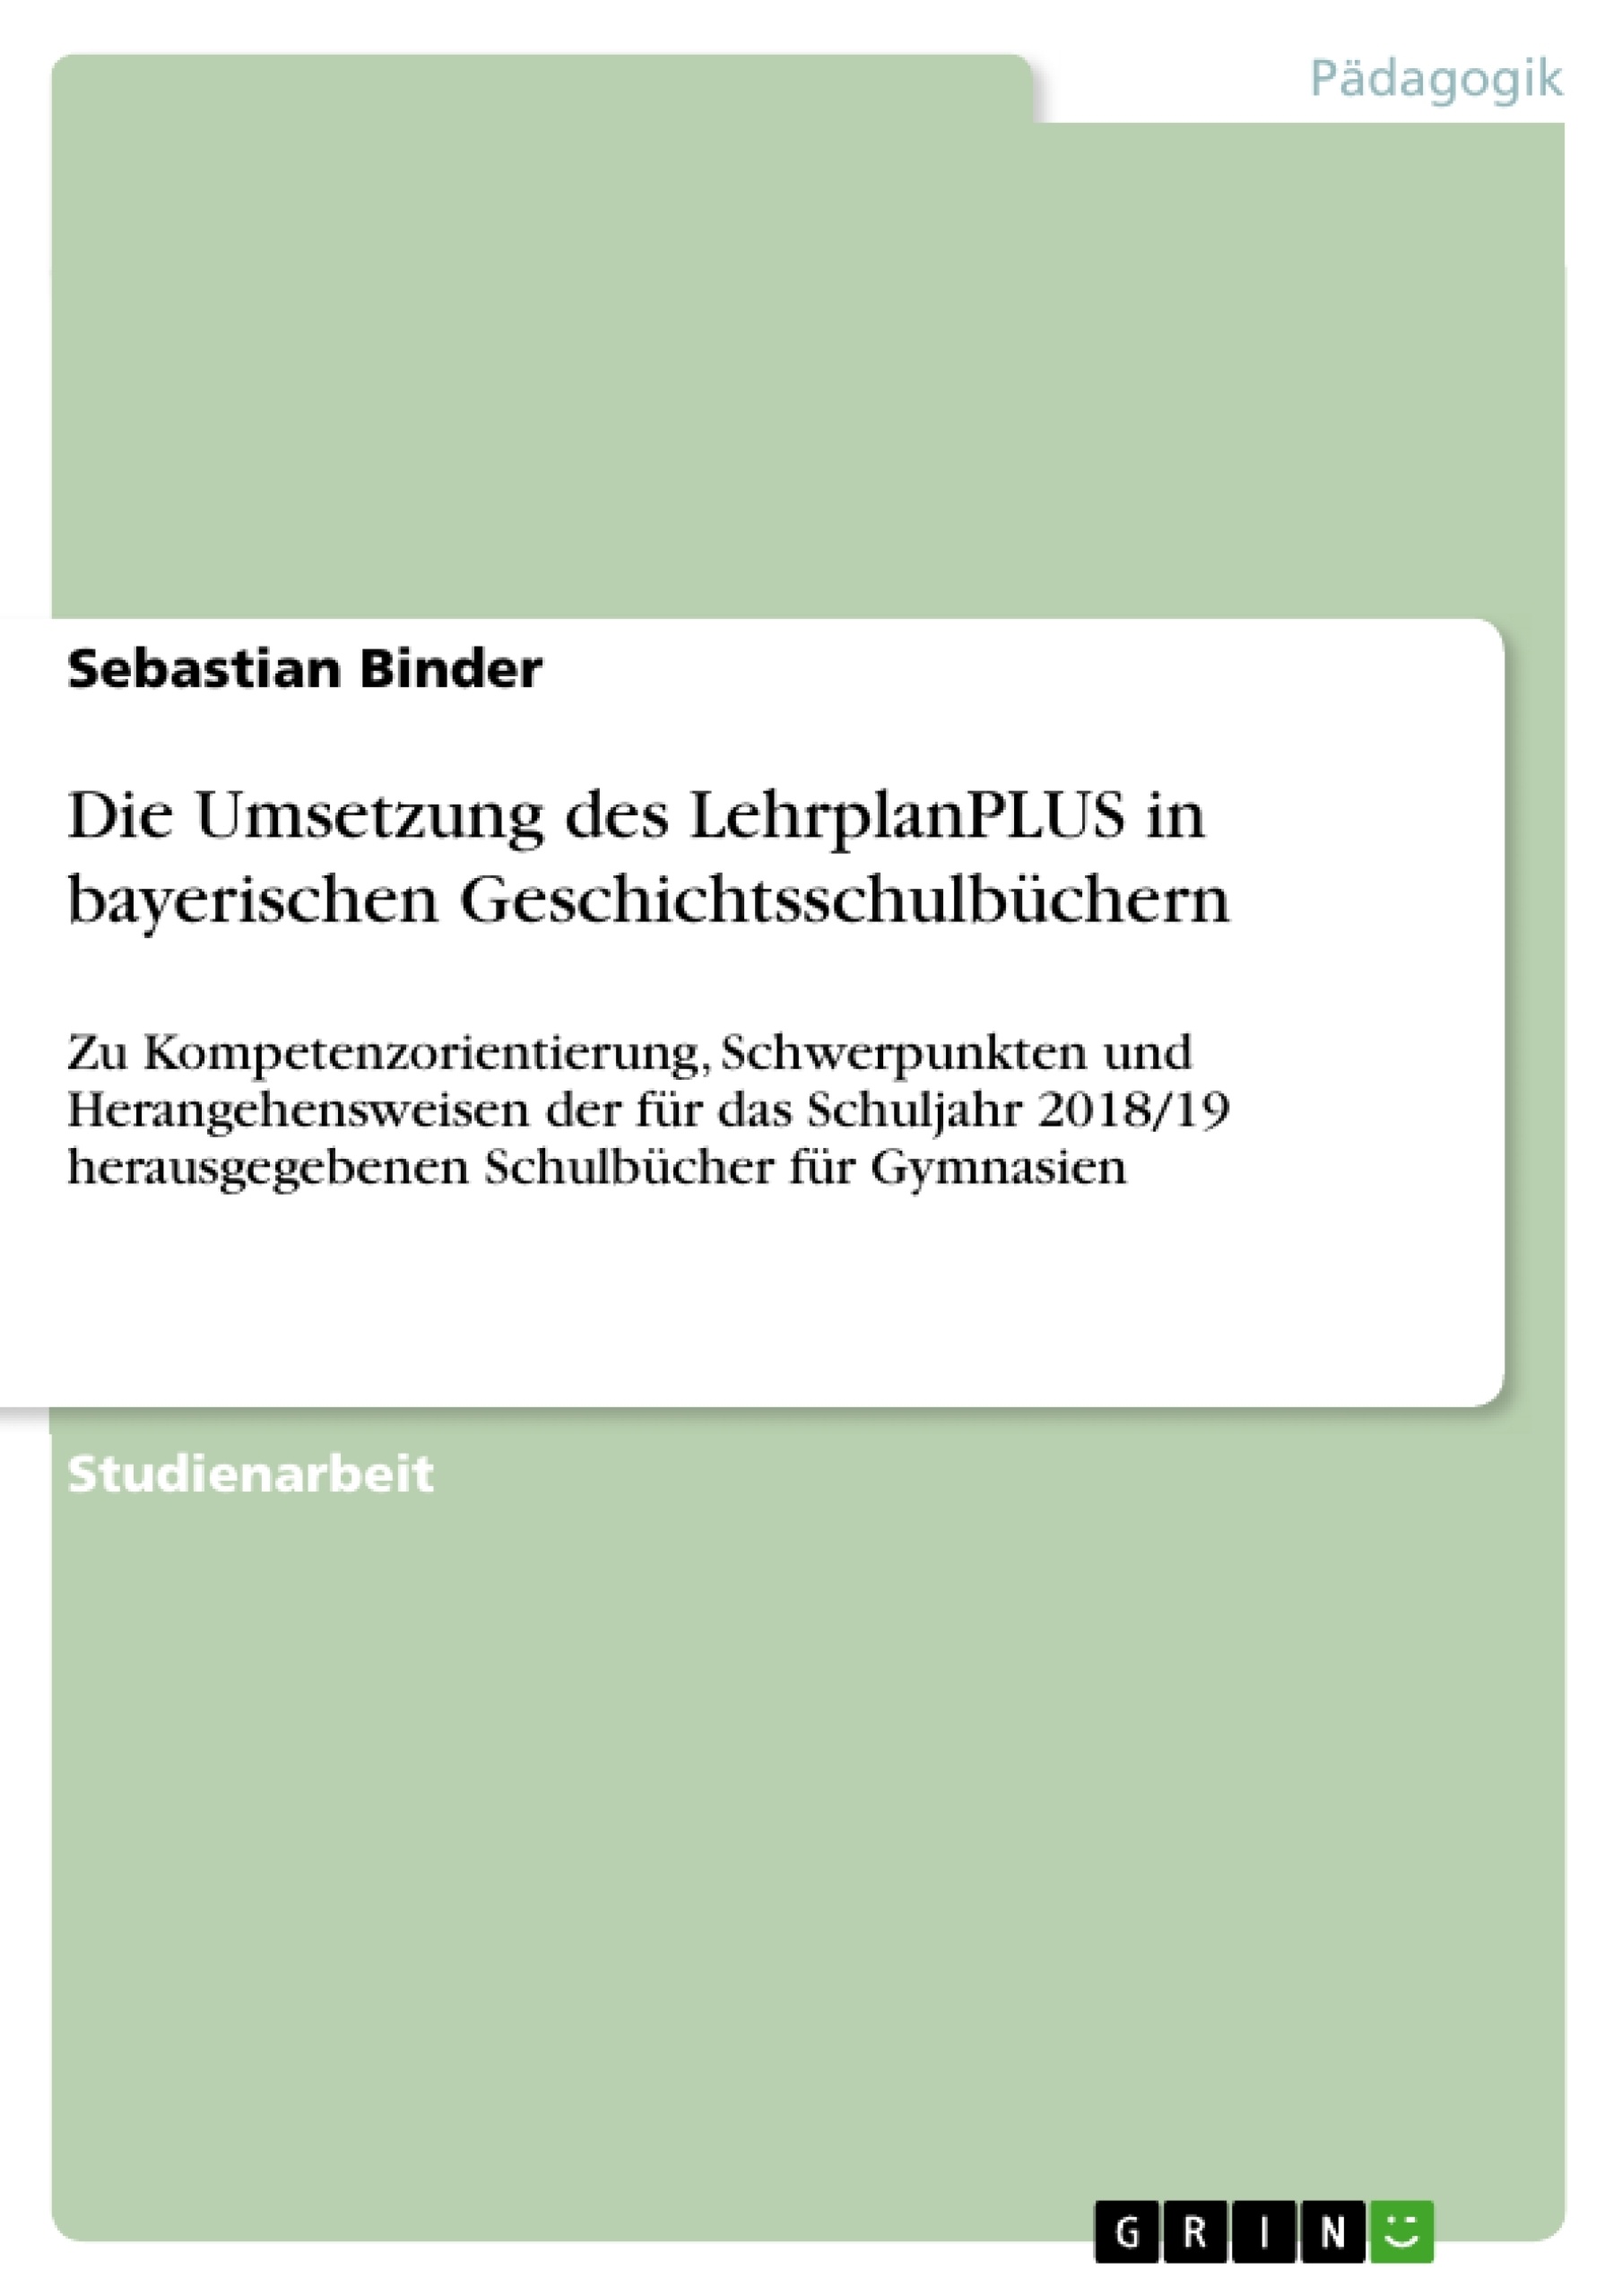 Title: Die Umsetzung des LehrplanPLUS in bayerischen Geschichtsschulbüchern